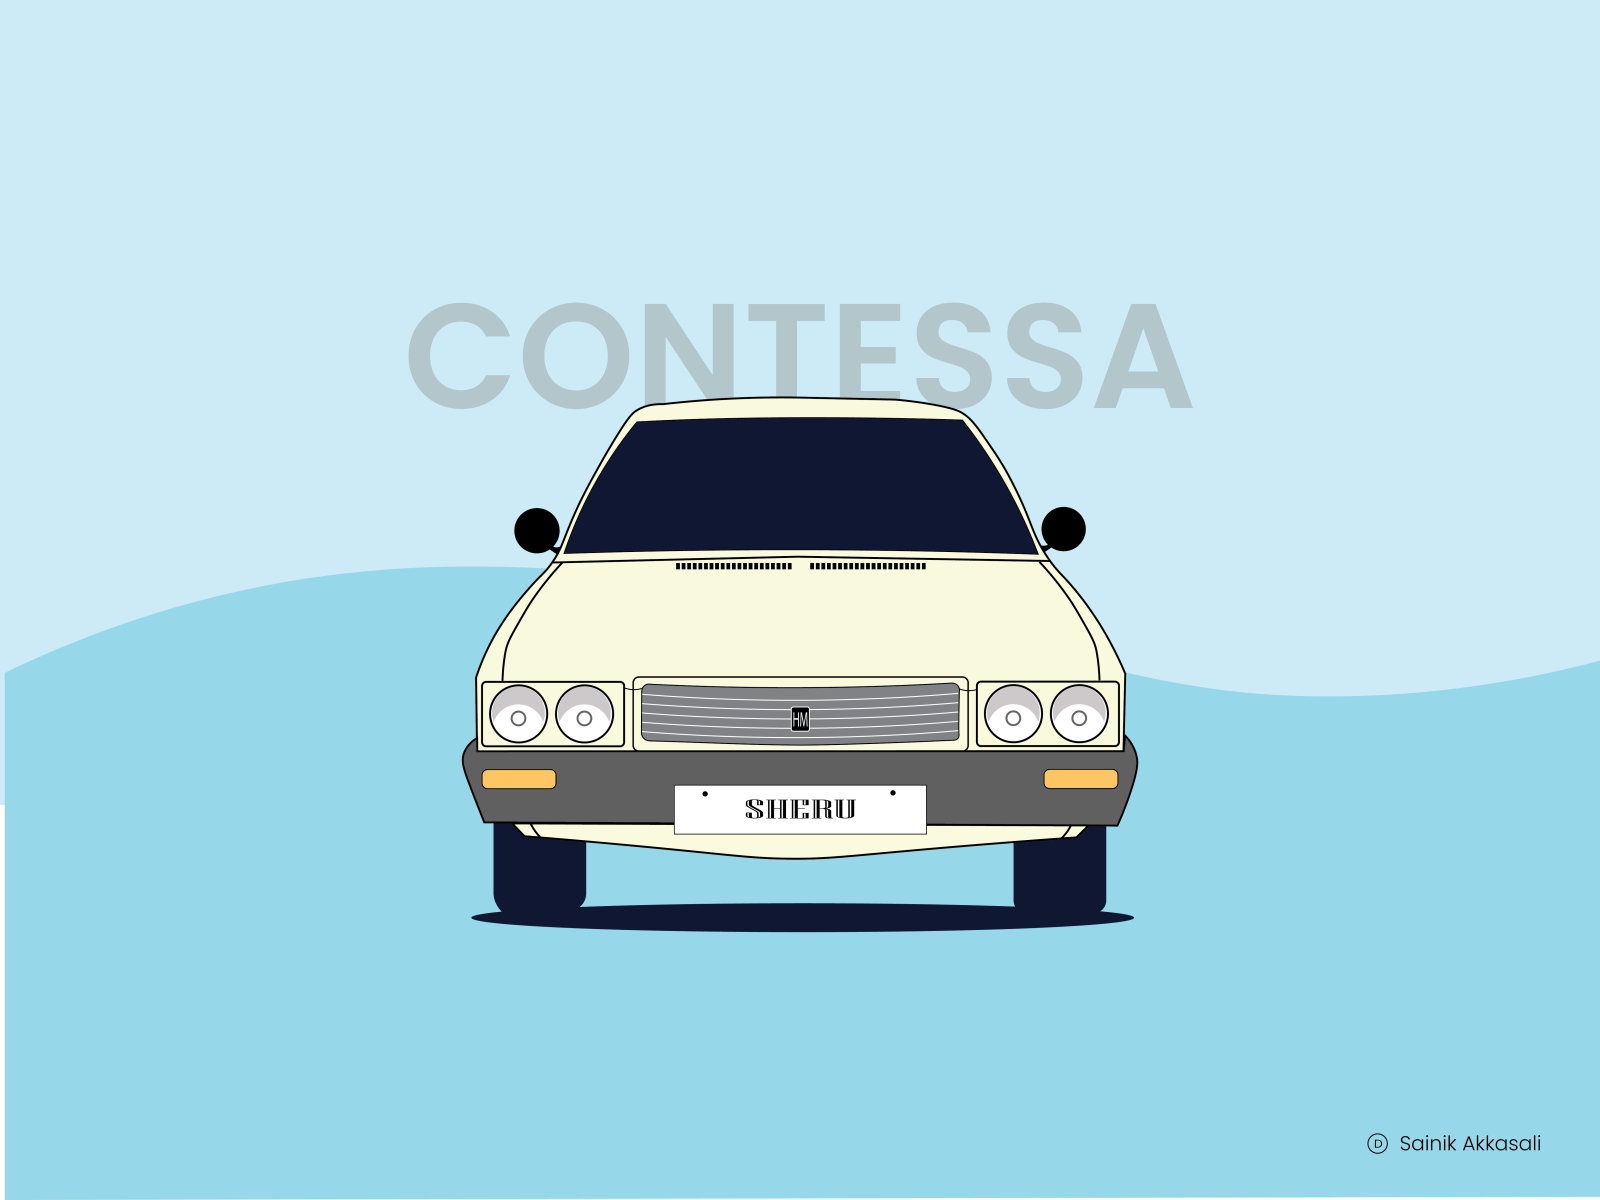 Top 5 Contessa cars  Hindustan Contessa Classic video  Modified Contessa   YouTube